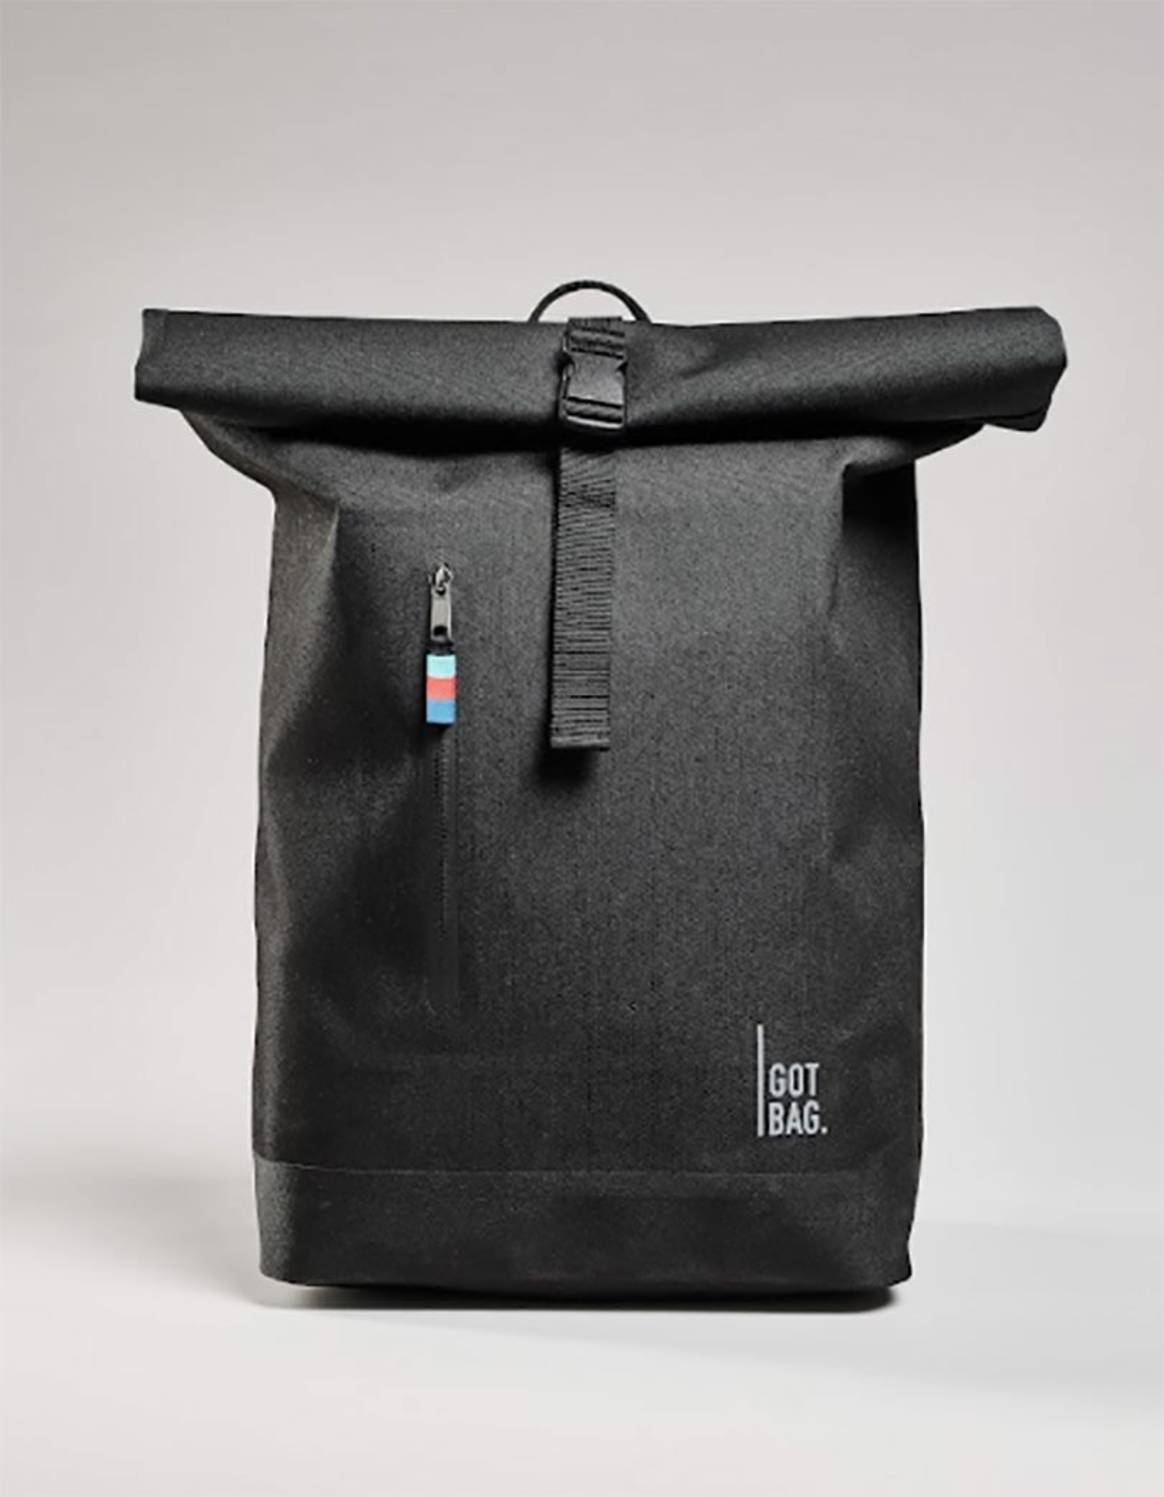 Every body is different, but they have GOT your BAG: Ikonischer GOT BAG ROLLTOP jetzt auch als LITE Version erhältlich